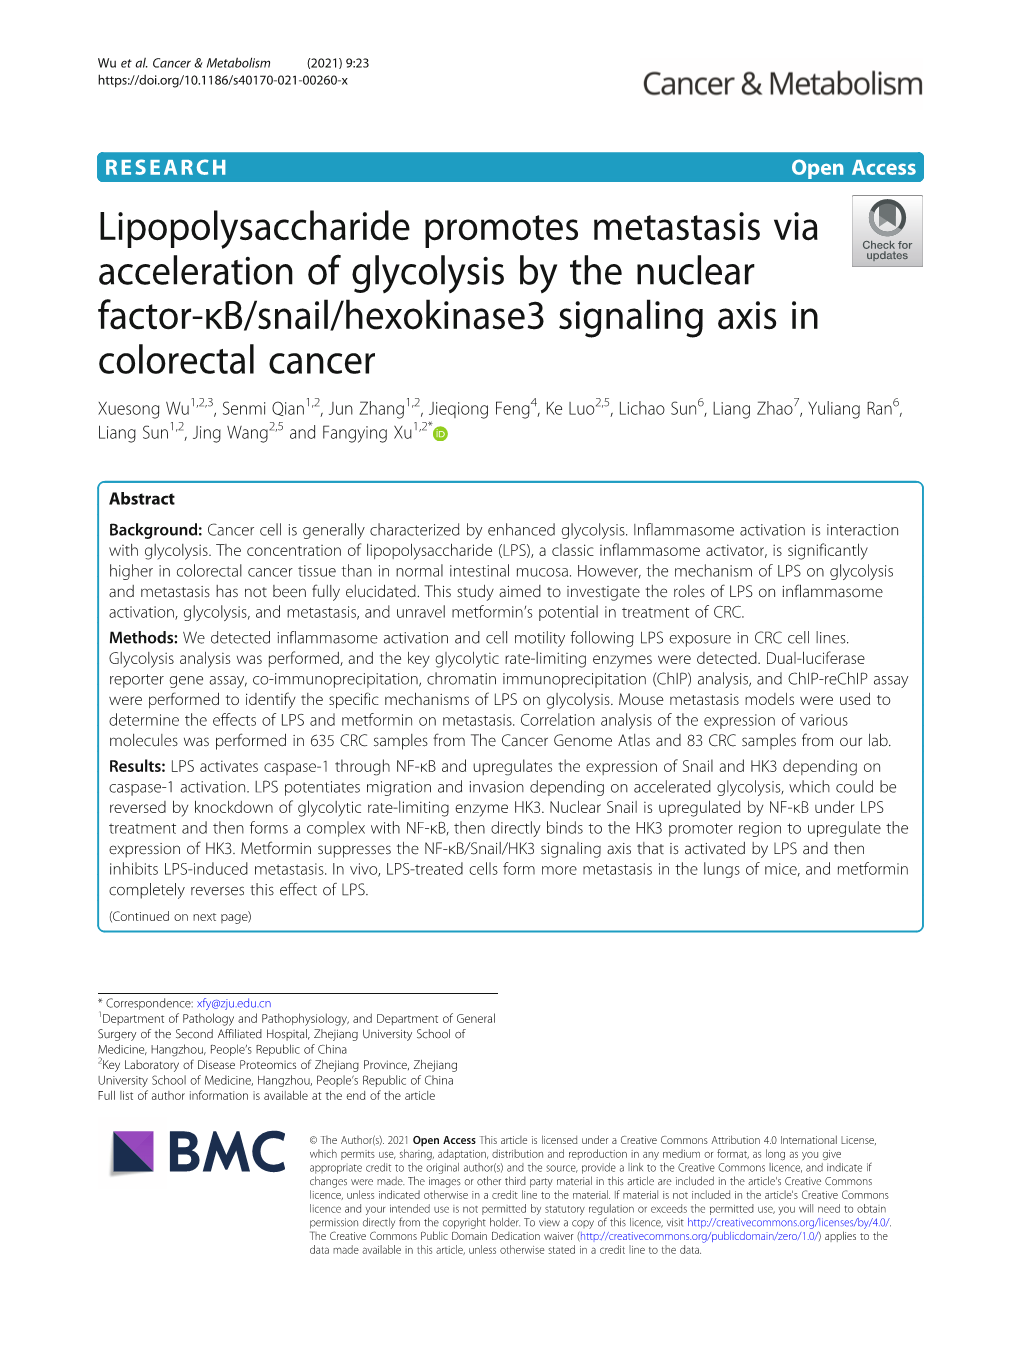 Lipopolysaccharide Promotes Metastasis Via Acceleration Of